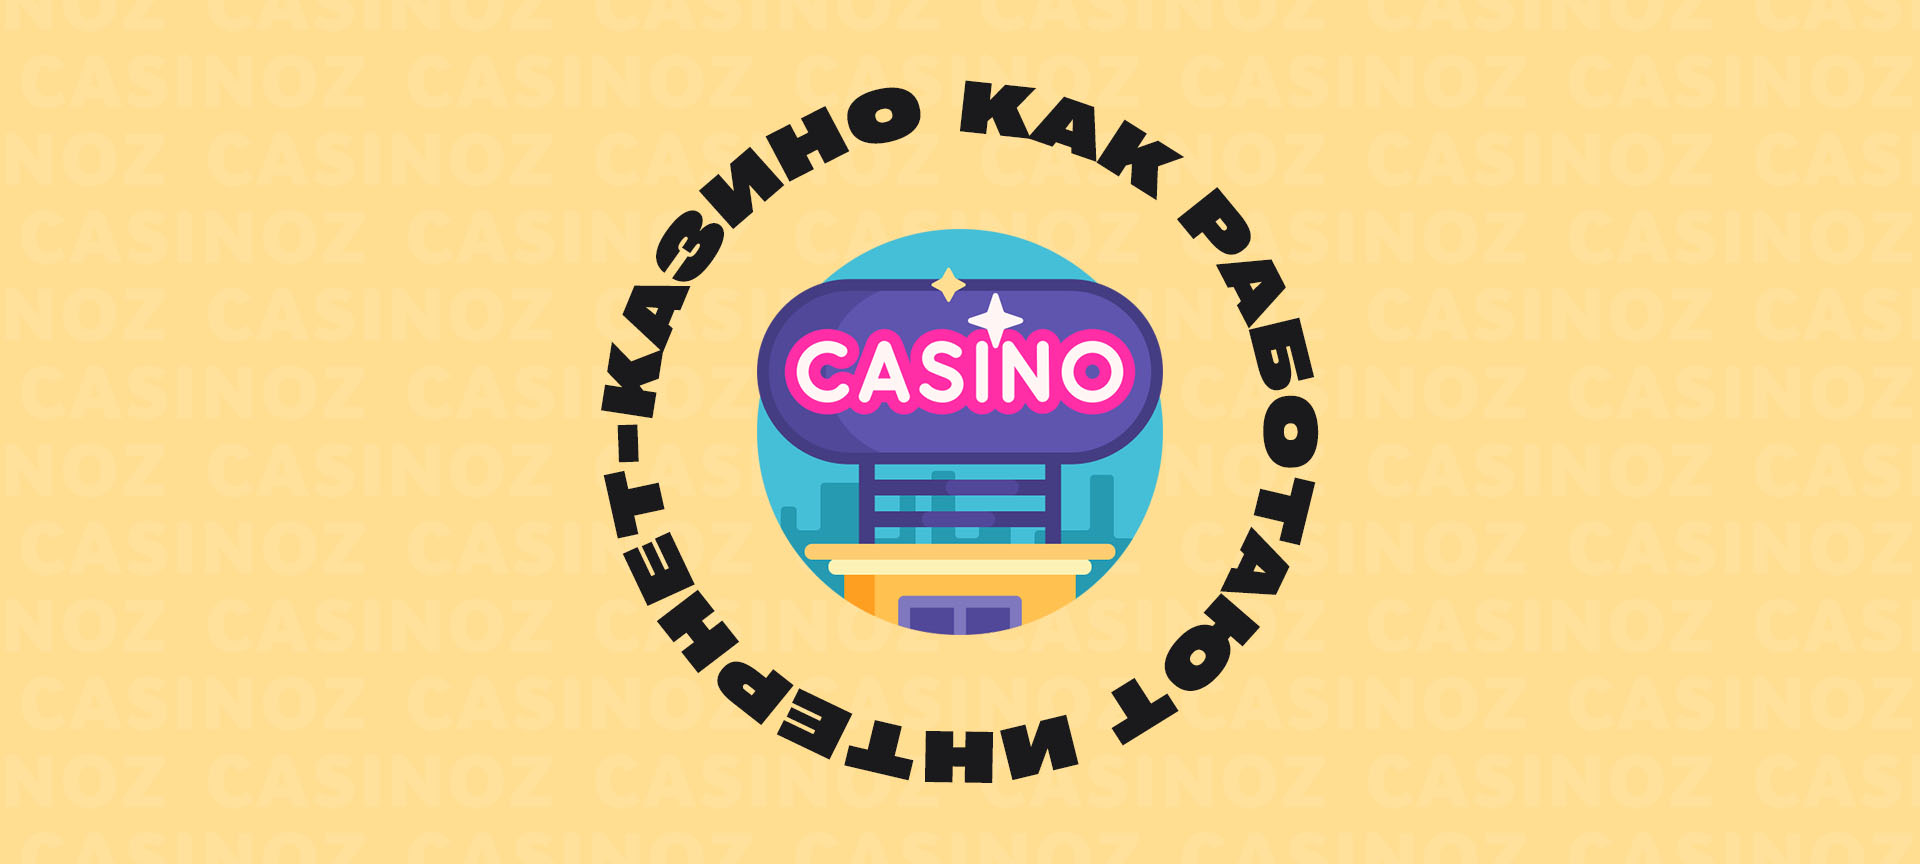 Обзор лицензионных онлайн казино topstars5 игровые автоматы скачать бесплатно без регистрации